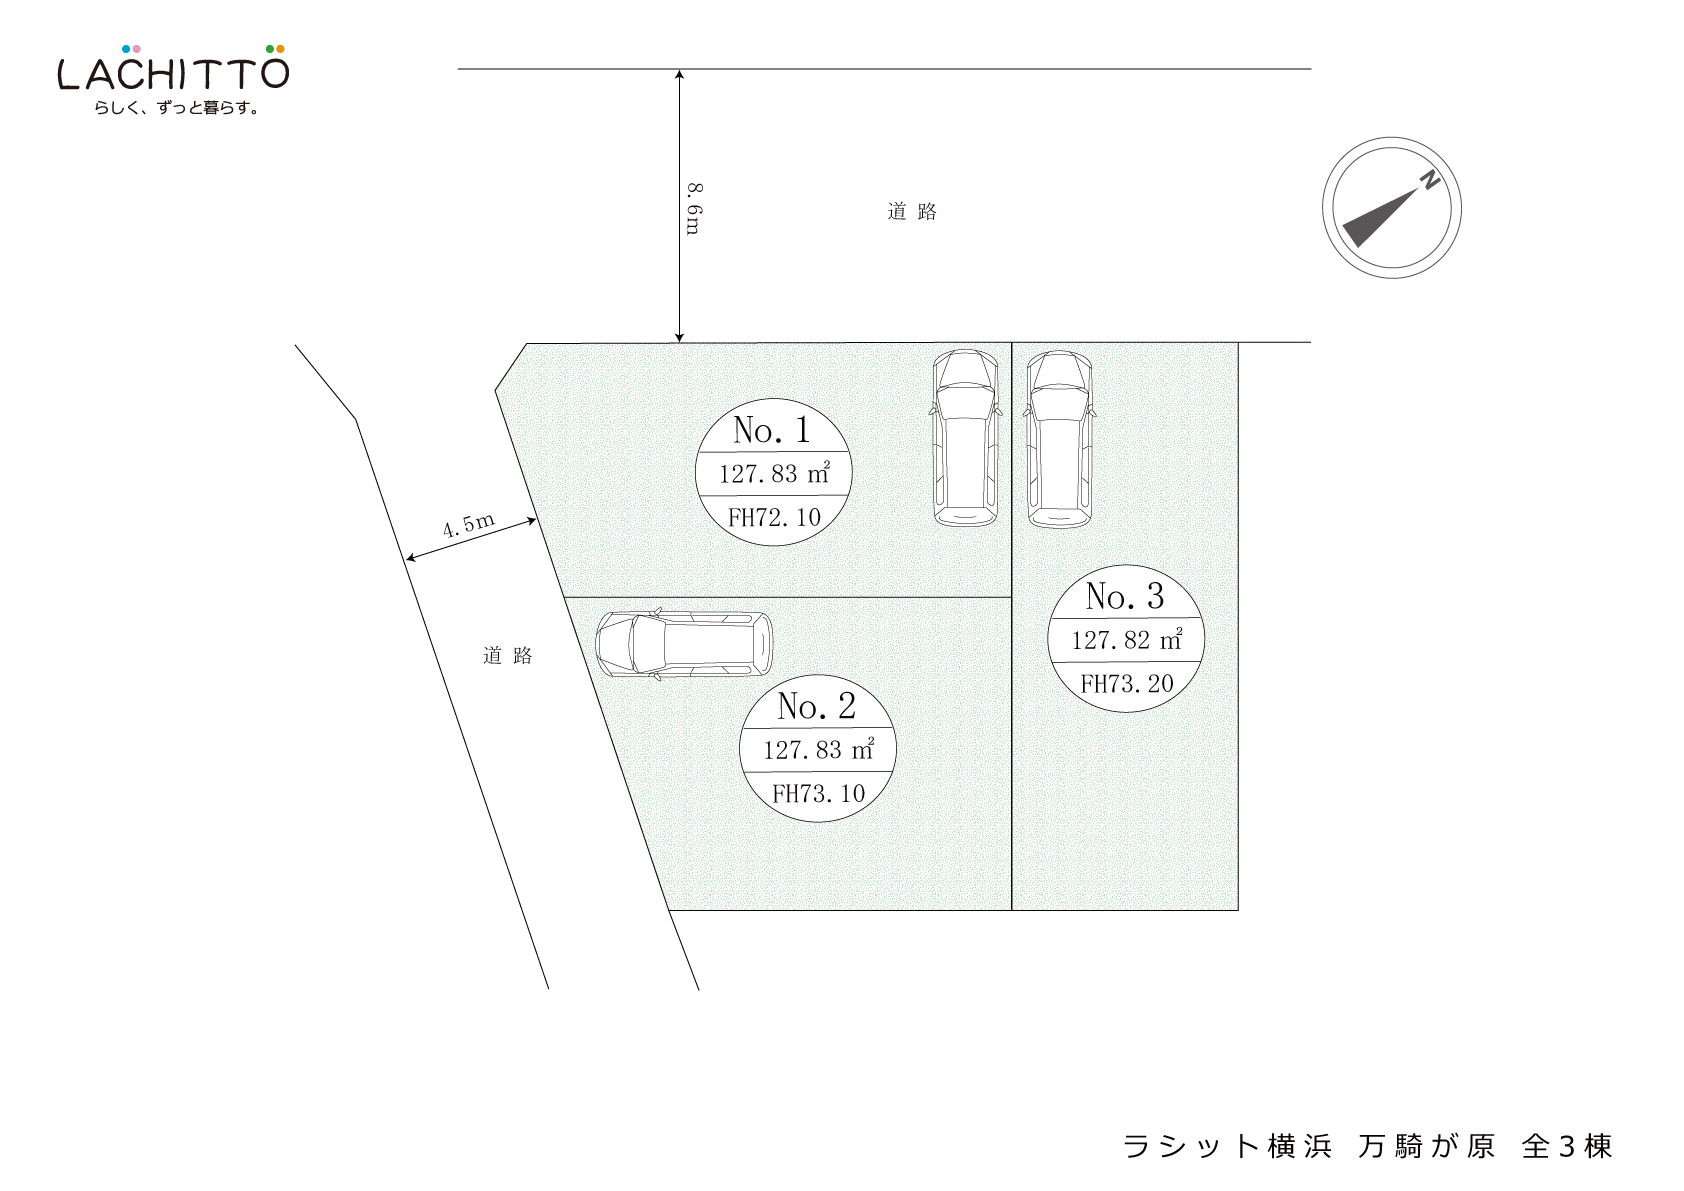 新築 戸建住宅 ラシット横浜 万騎が原 全3棟 全体区画図 横浜建物